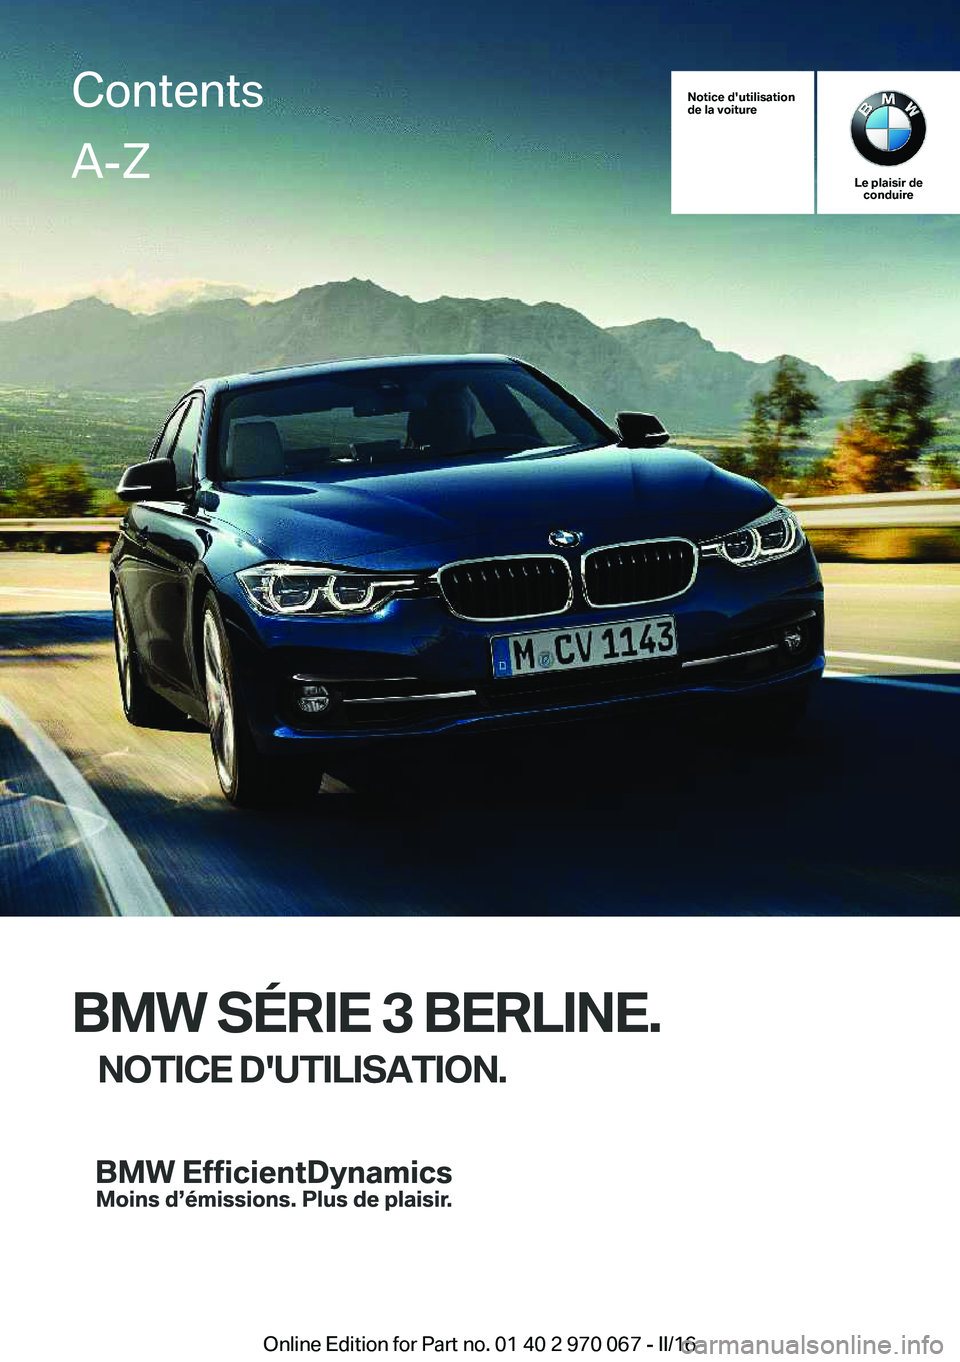 BMW 3 SERIES 2016  Notices Demploi (in French) Notice d'utilisation
de la voiture
Le plaisir de conduire
BMW SÉRIE 3 BERLINE.
NOTICE D'UTILISATION.
ContentsA-Z
Online Edition for Part no. 01 40 2 970 067 - II/16   